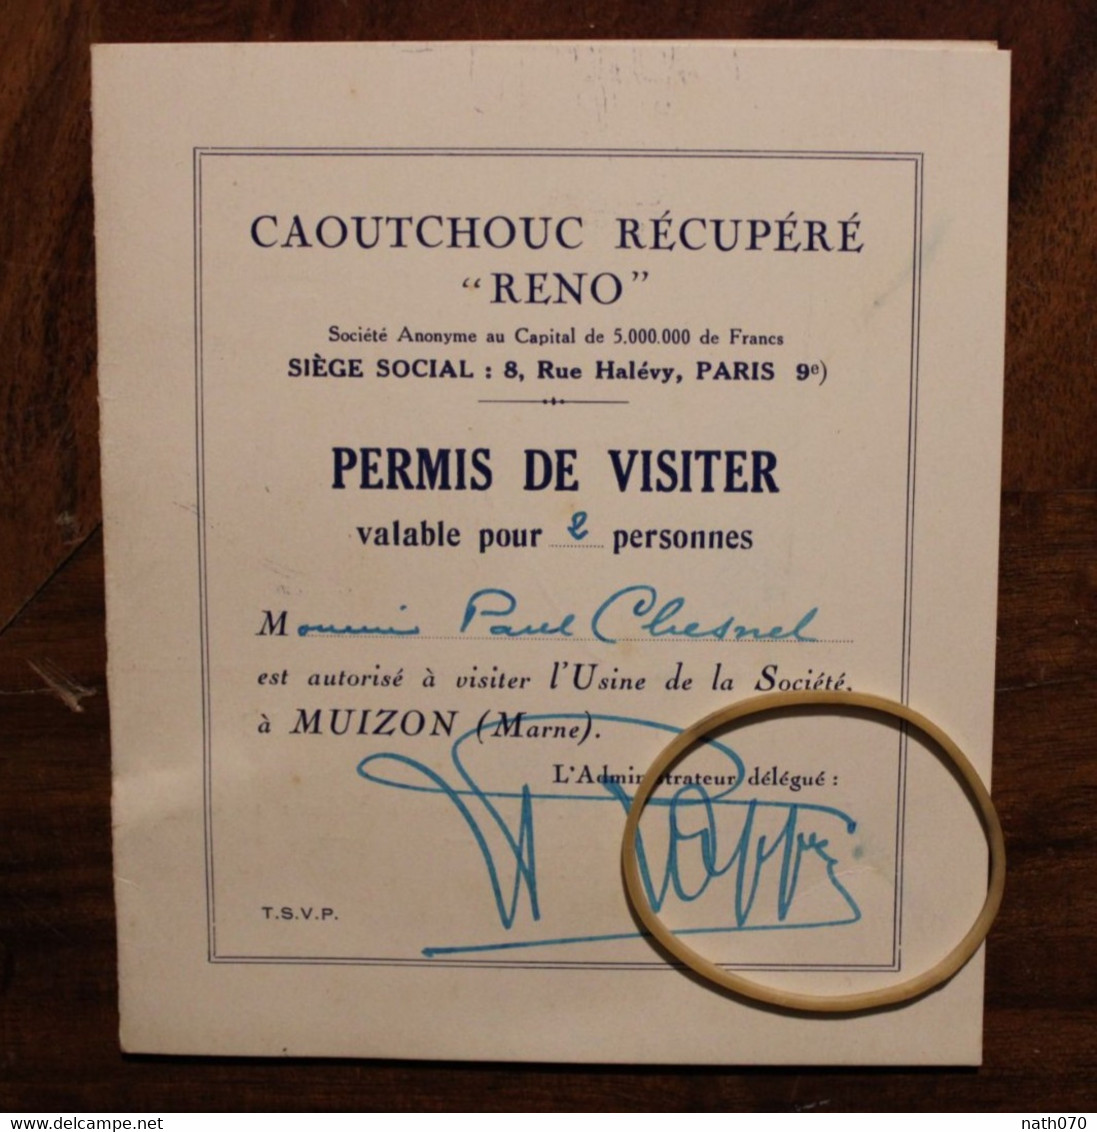 1928 Muizon (Marne) Usine RENO caoutchouc récupéré Lot de 6 photos dont ouvrières + carton permis de visiter Rare lot !